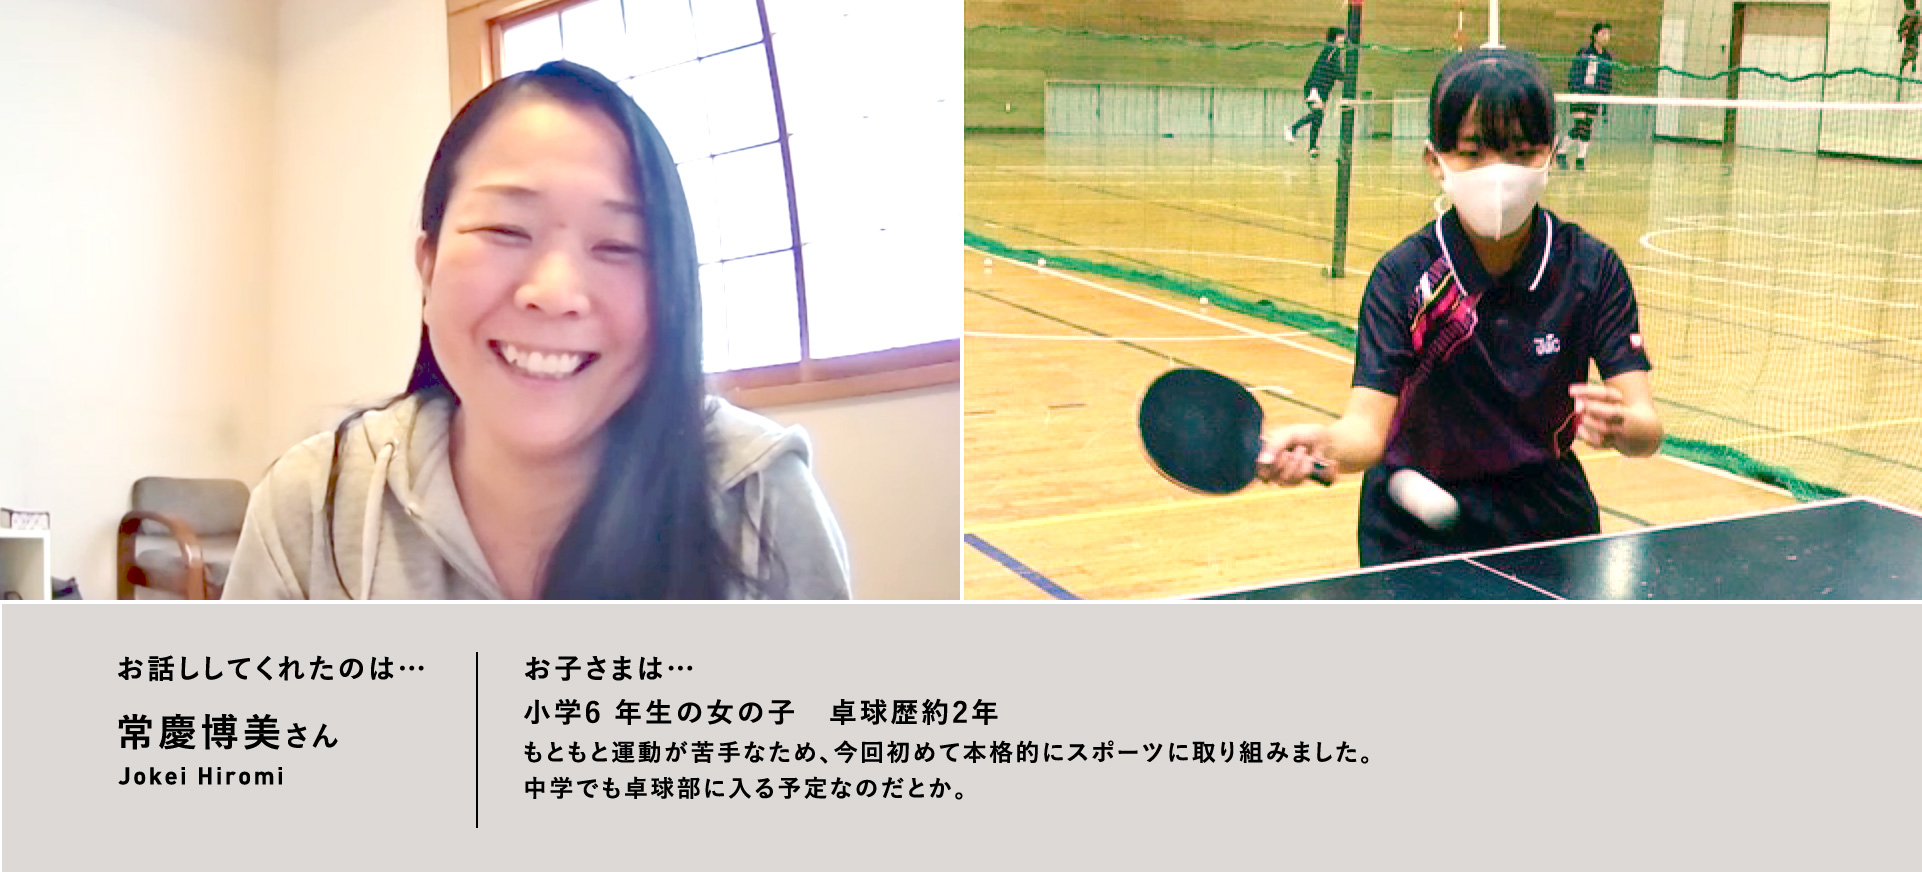 お話ししてくれたのは…常慶博美さん／お子さまは…⼩学6 年⽣の⼥の⼦　卓球歴約2年もともと運動が苦⼿なため、今回初めて本格的にスポーツに取り組みました。中学でも卓球部に⼊る予定なのだとか。